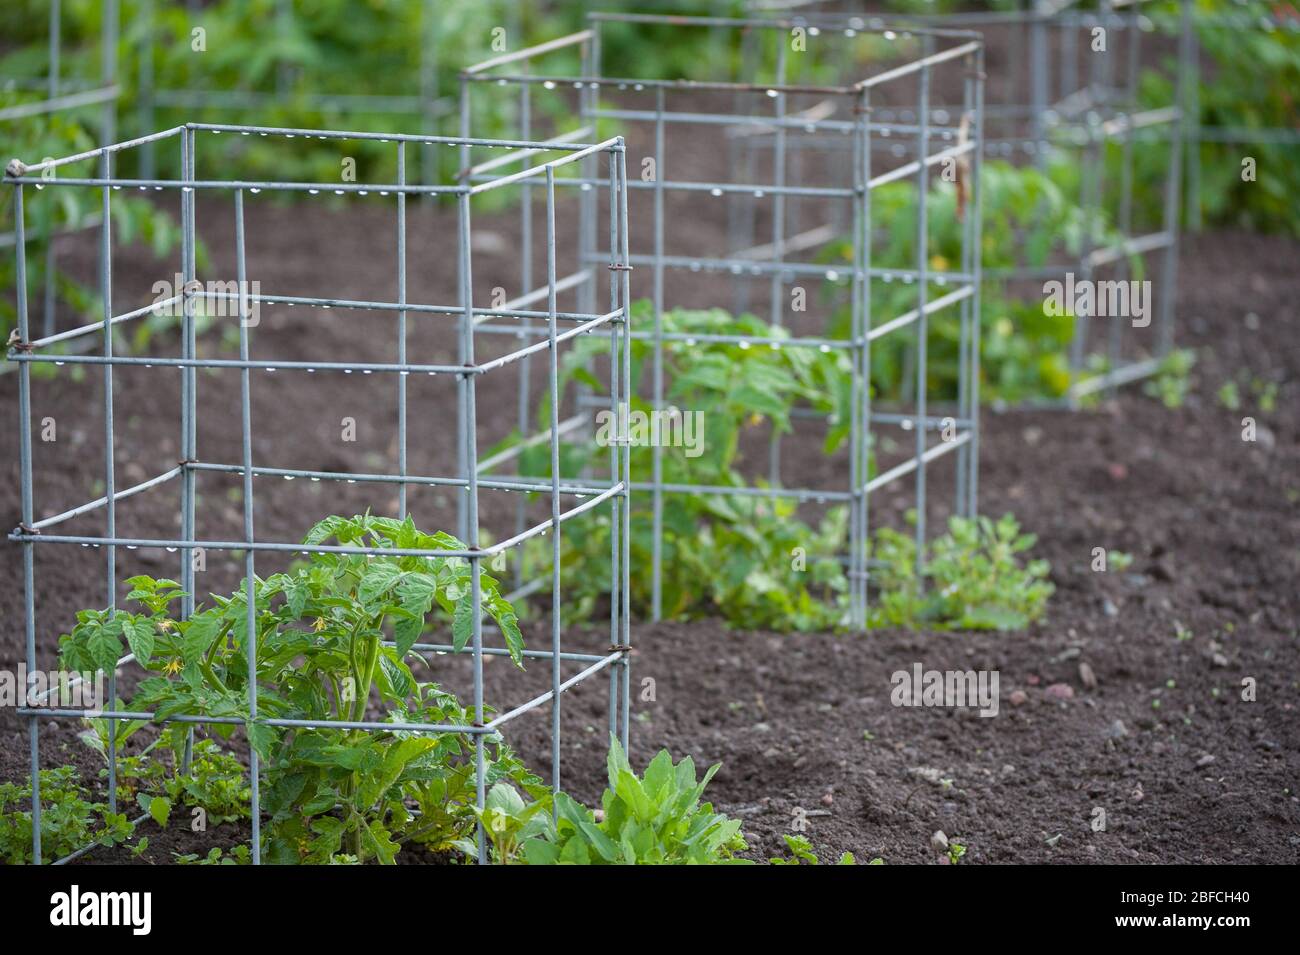 Piante di pomodoro nel giardino vegetale dopo la pioggia gabbie di metallo che sostengono le piante giovani germogliano in cortile sostenibile sano organico giardino domestico suolo Foto Stock